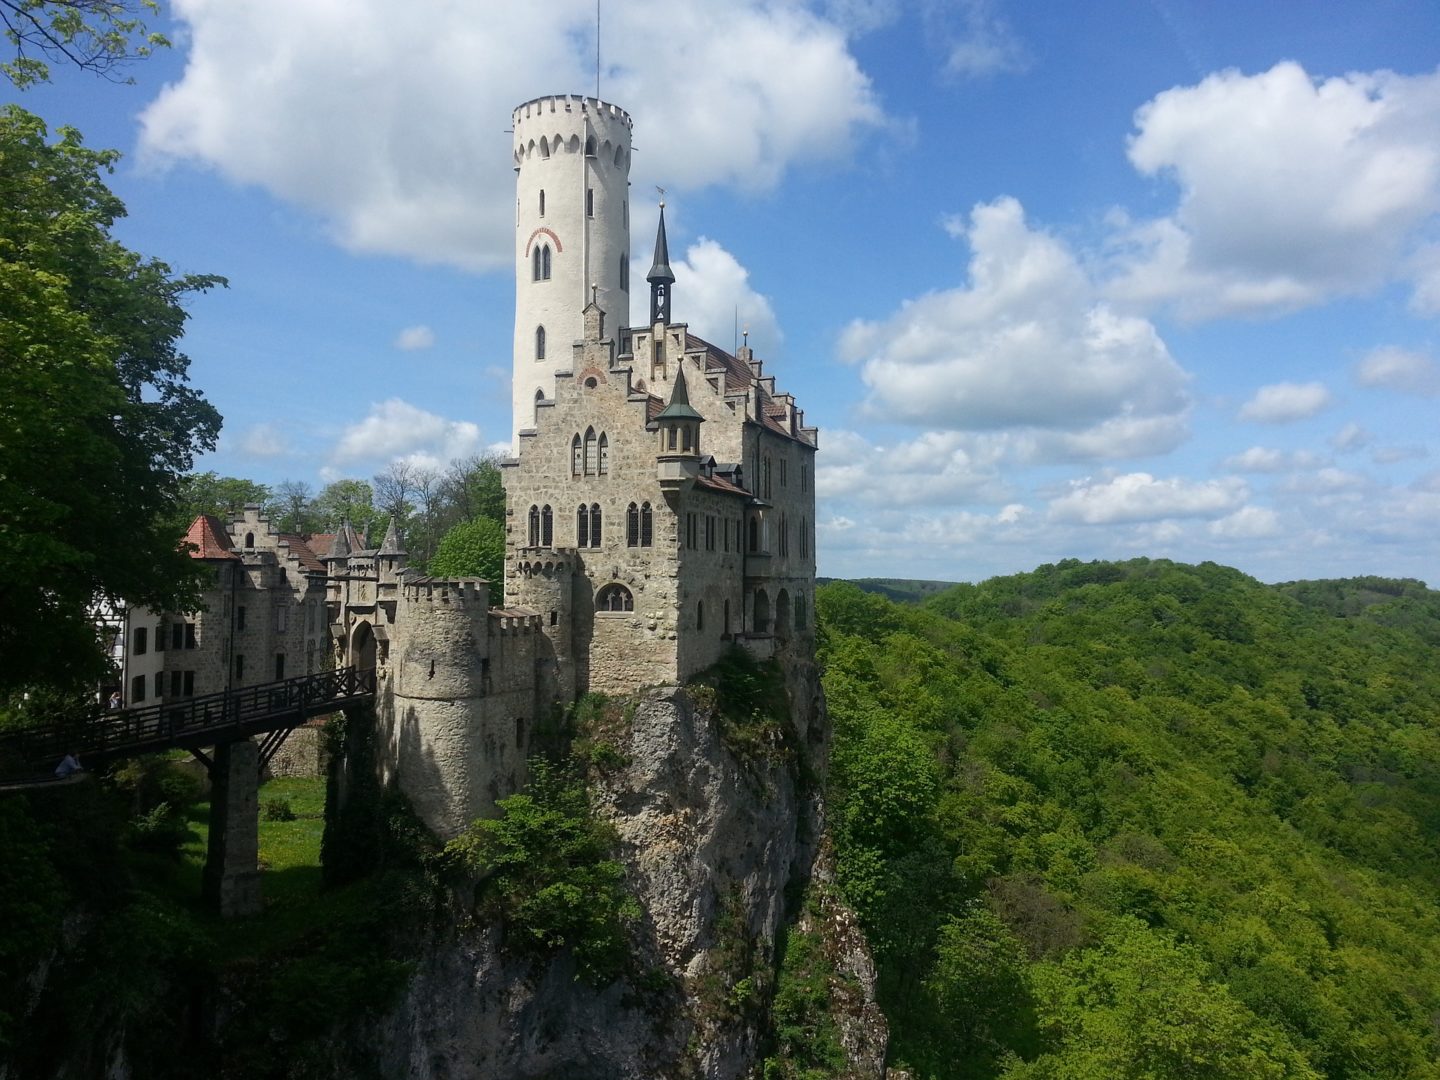 Schloss Lichtenstein looking regal on its cliff